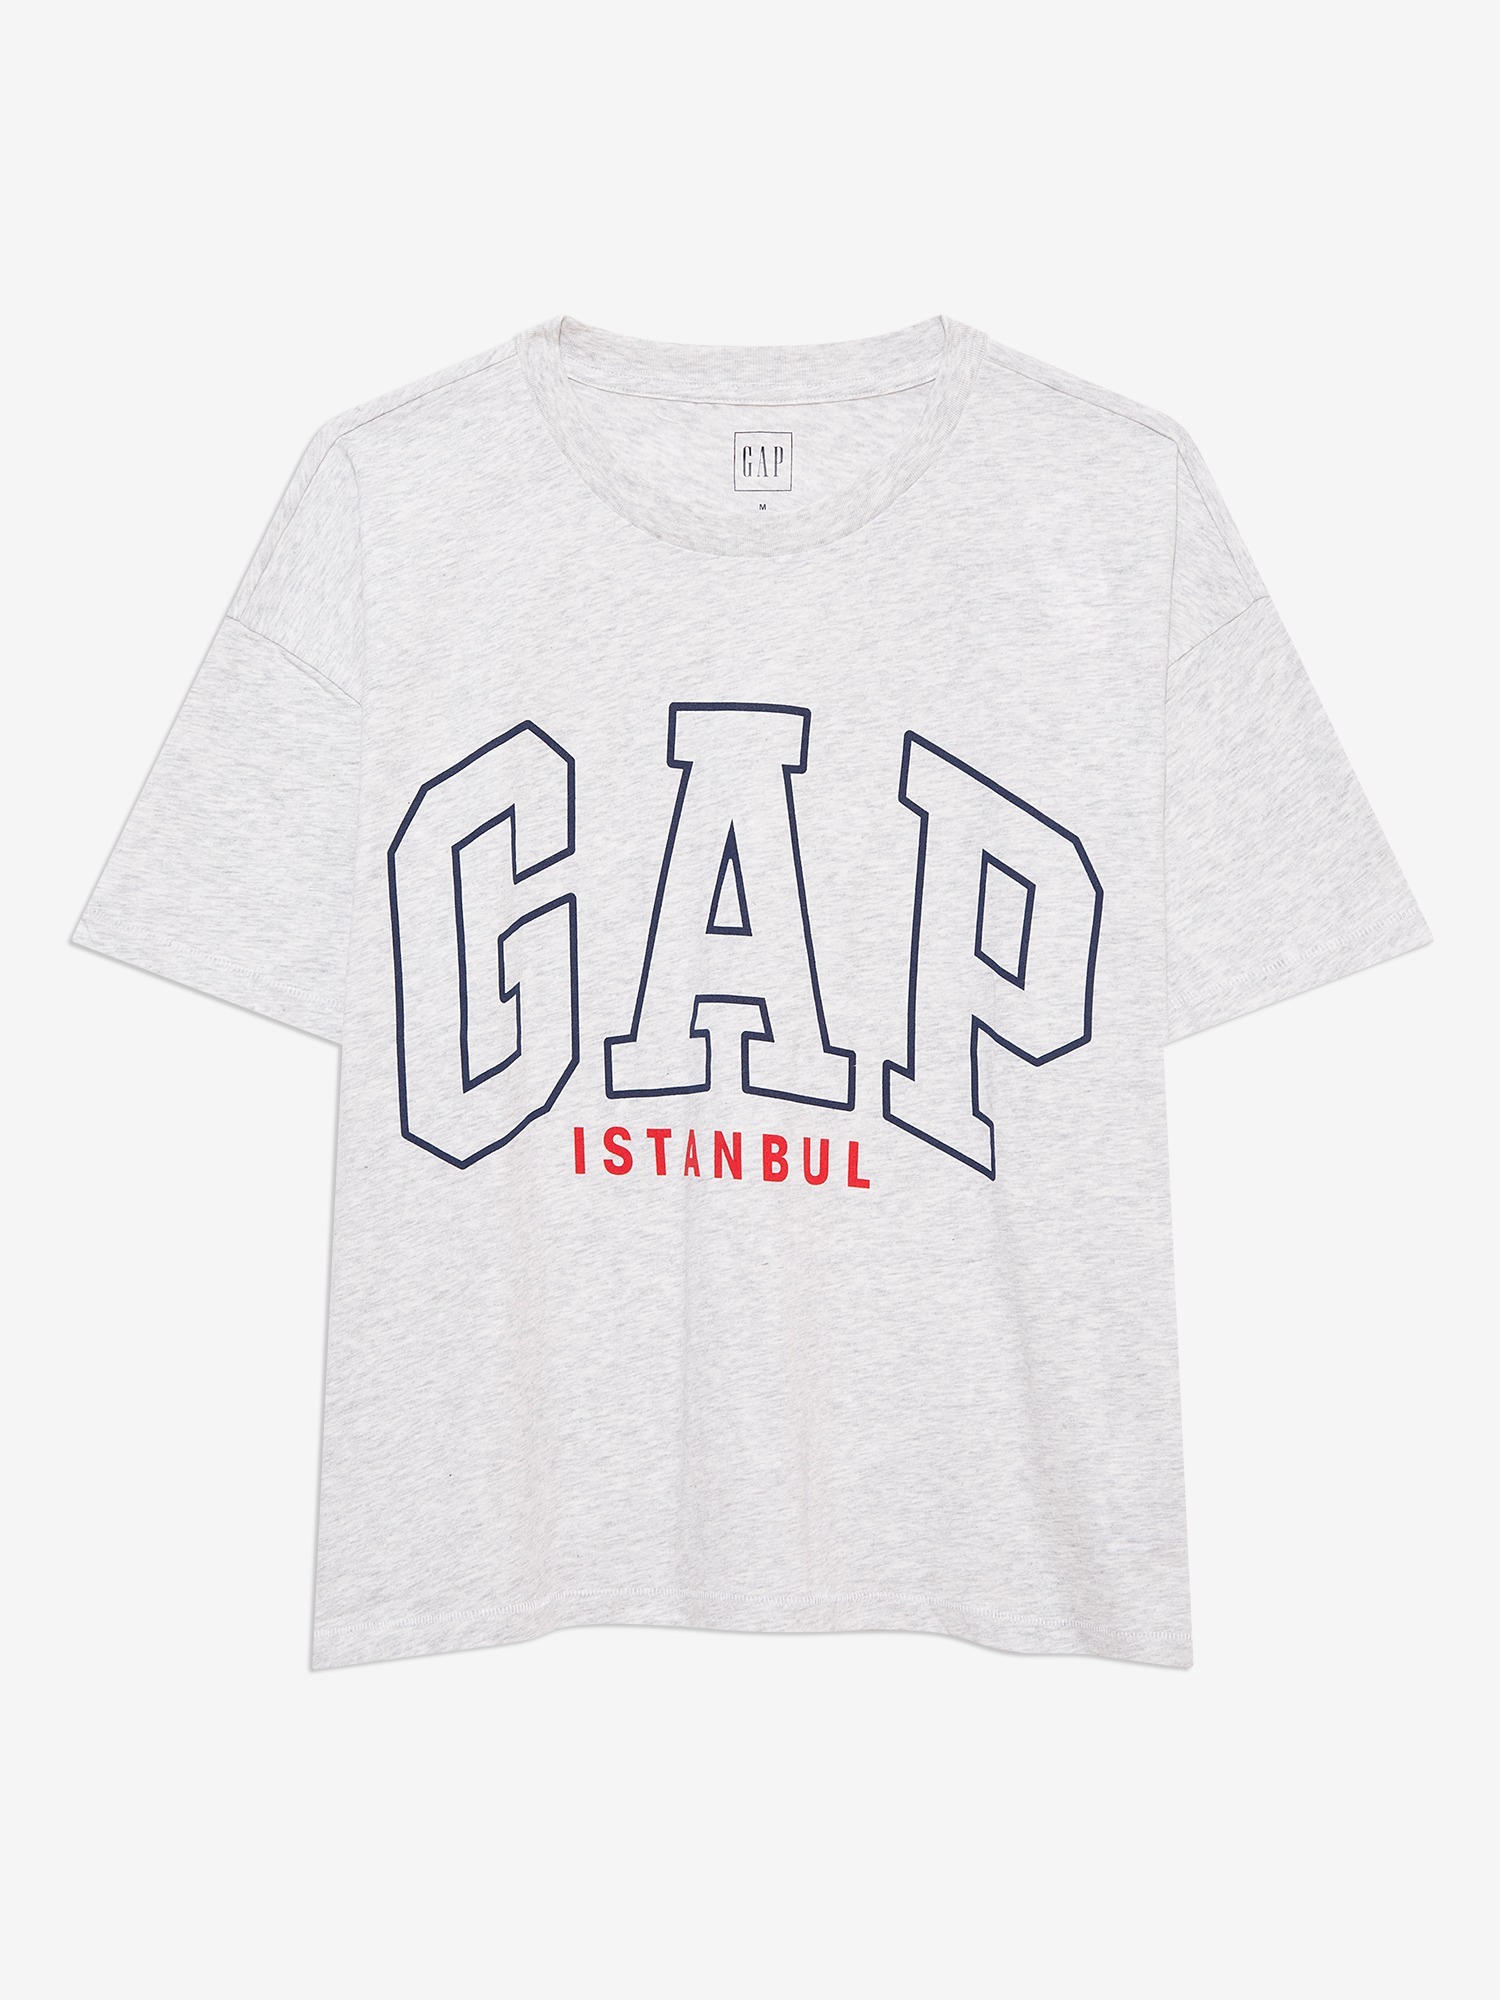 Gap Gap Logo İstanbul T-Shirt. 1